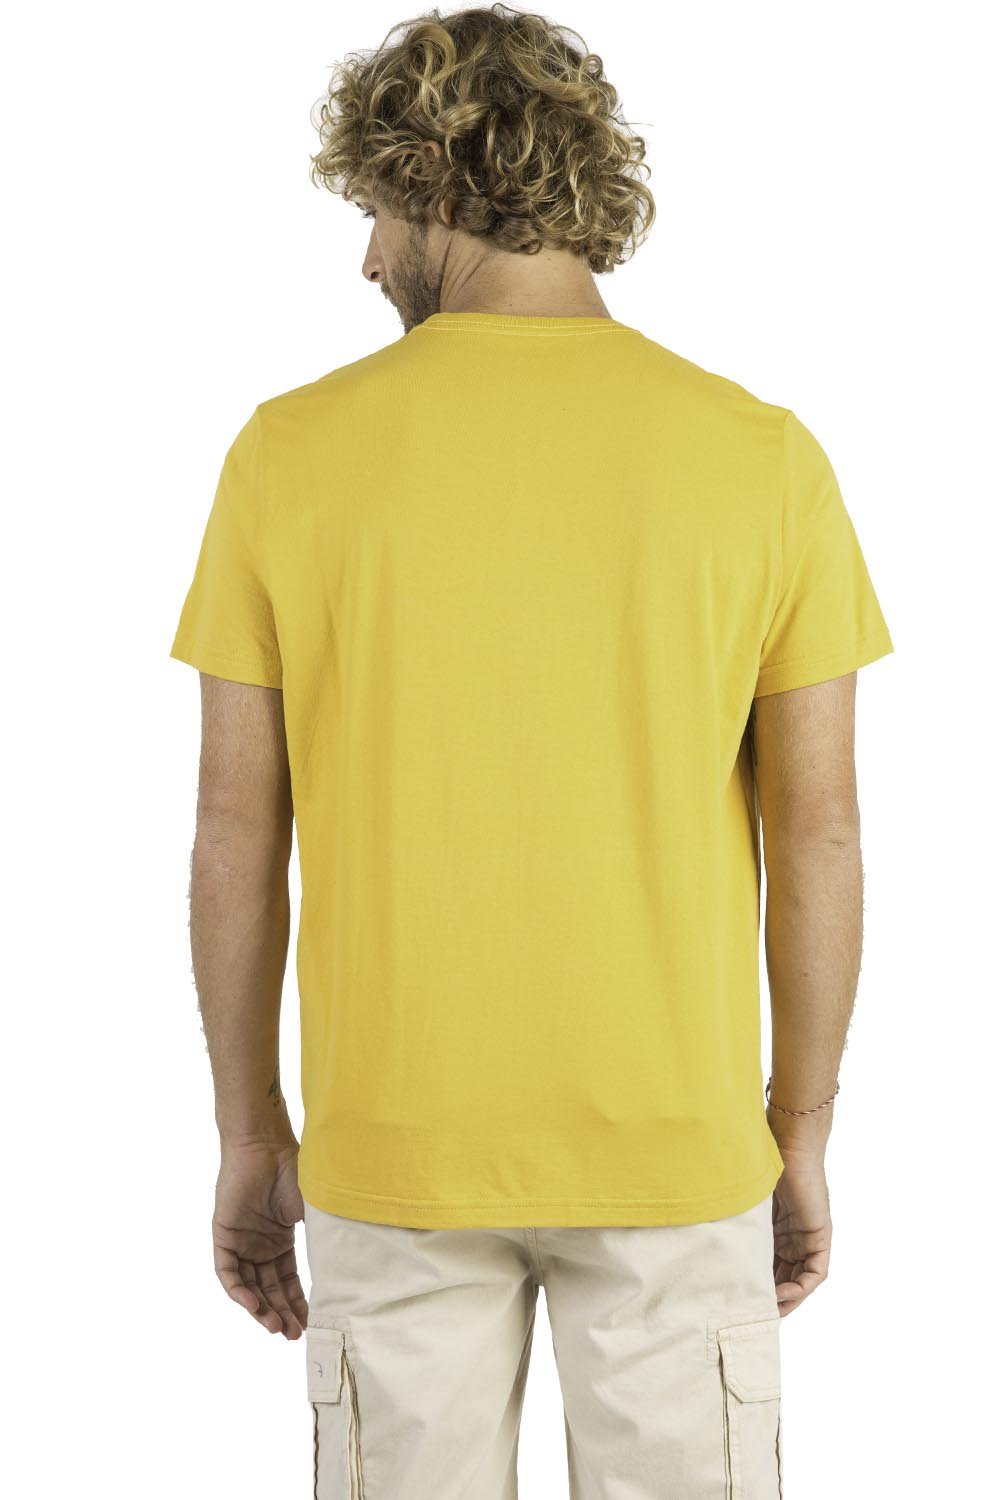 T-Shirt Básica Comfort Amarelo Claro